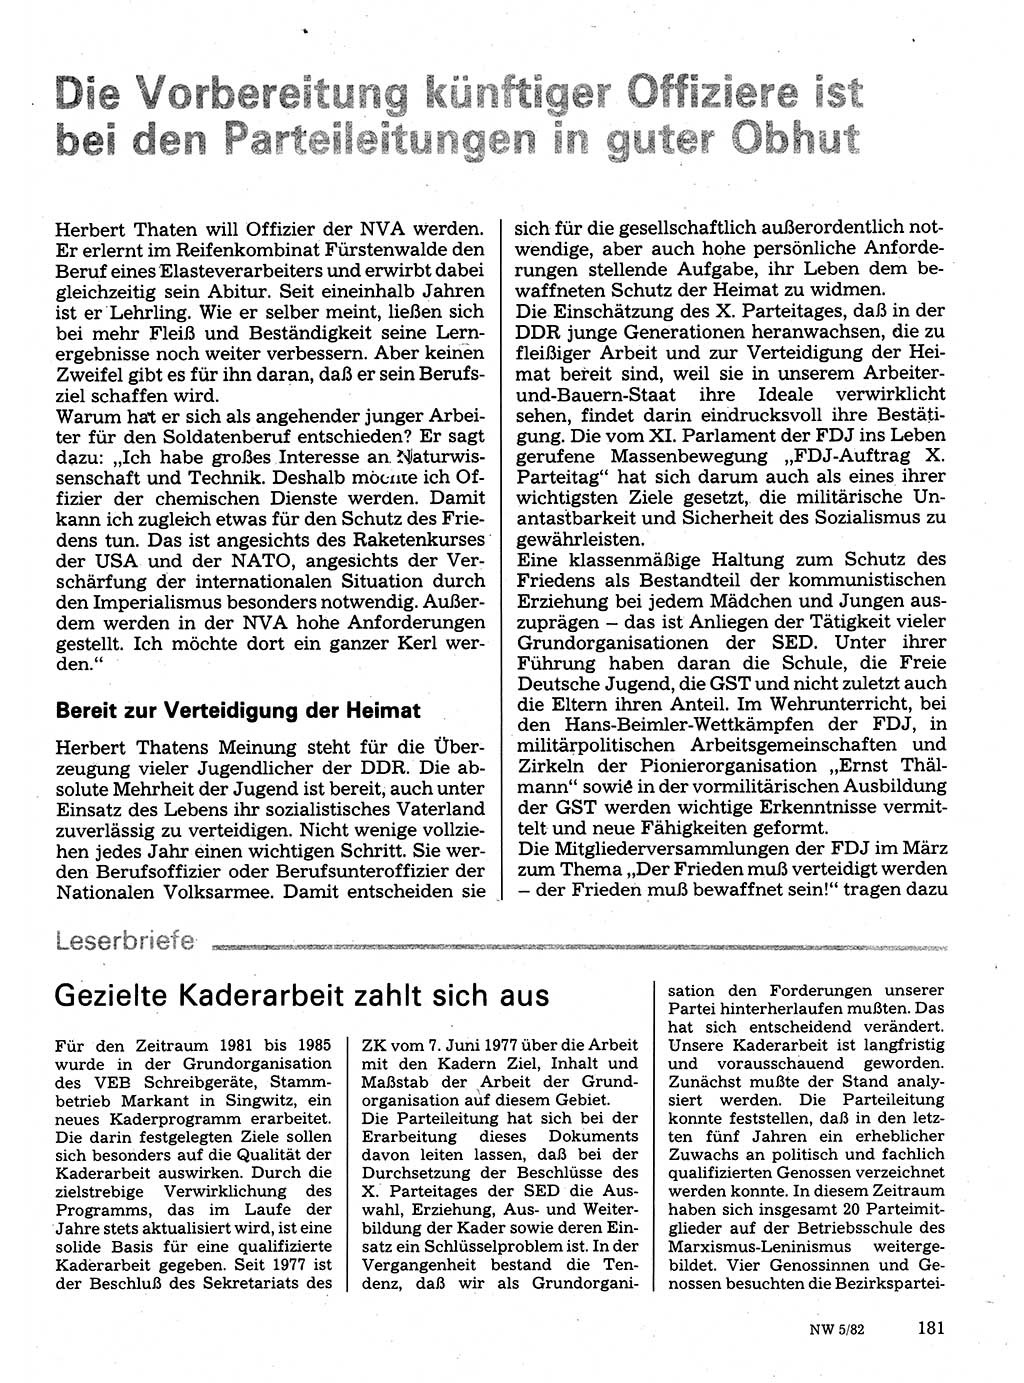 Neuer Weg (NW), Organ des Zentralkomitees (ZK) der SED (Sozialistische Einheitspartei Deutschlands) für Fragen des Parteilebens, 37. Jahrgang [Deutsche Demokratische Republik (DDR)] 1982, Seite 181 (NW ZK SED DDR 1982, S. 181)